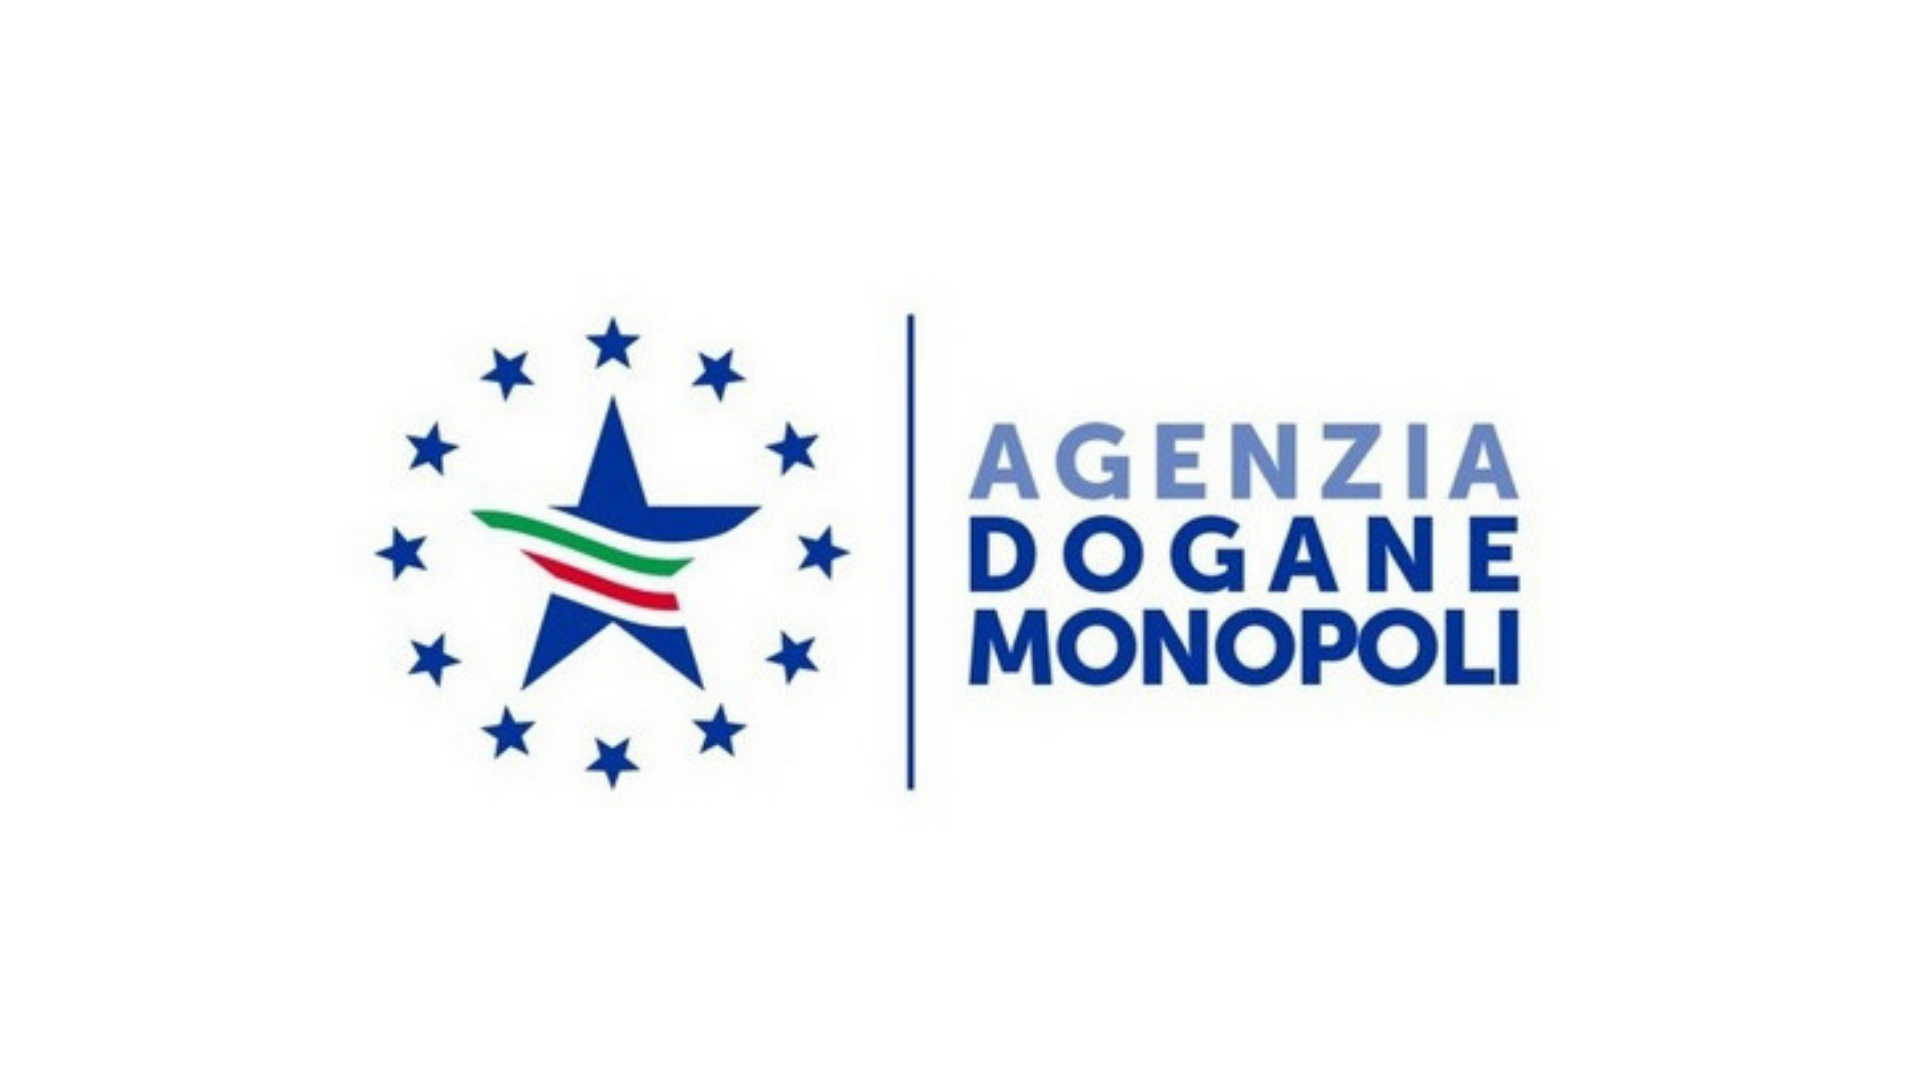 Agenzia Dogane e Monopoli v13